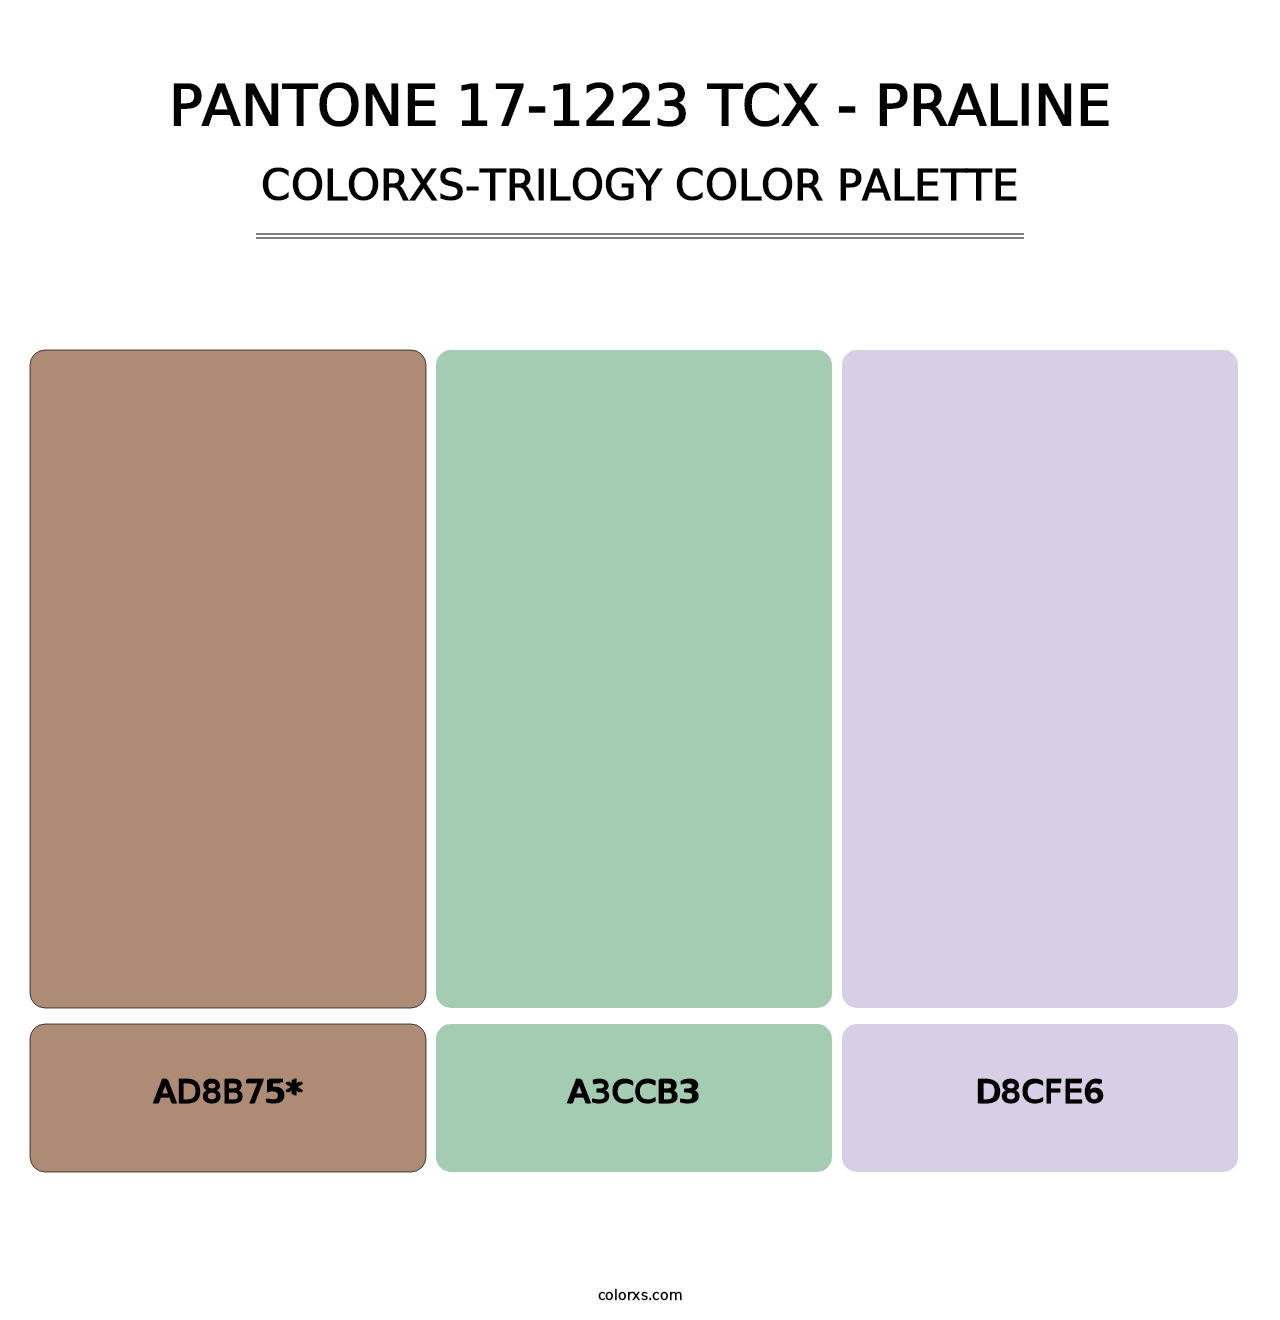 PANTONE 17-1223 TCX - Praline - Colorxs Trilogy Palette